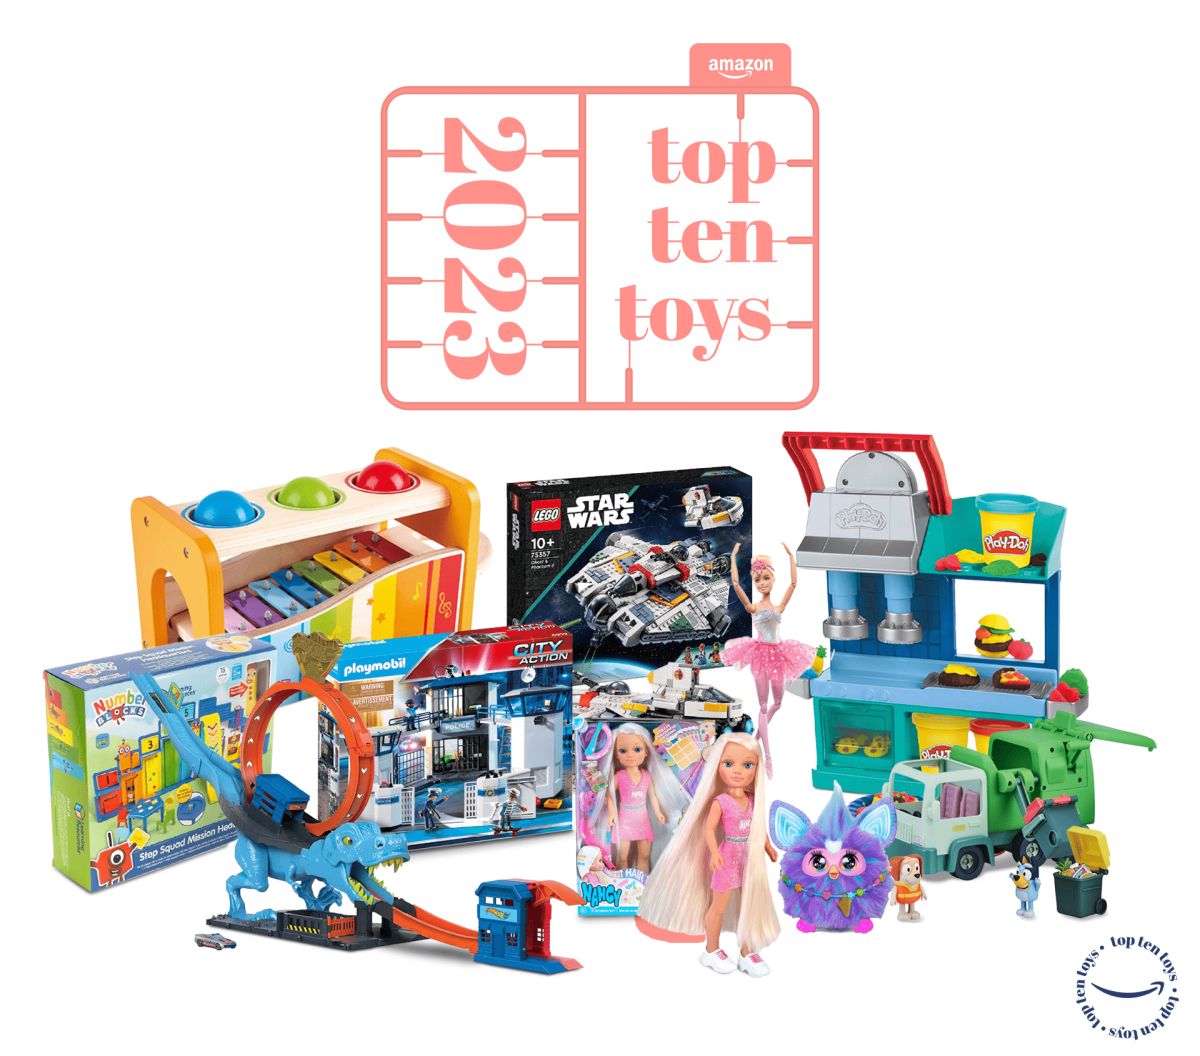 Amazon desvela el ‘Top 10’ de juguetes para esta Navidad